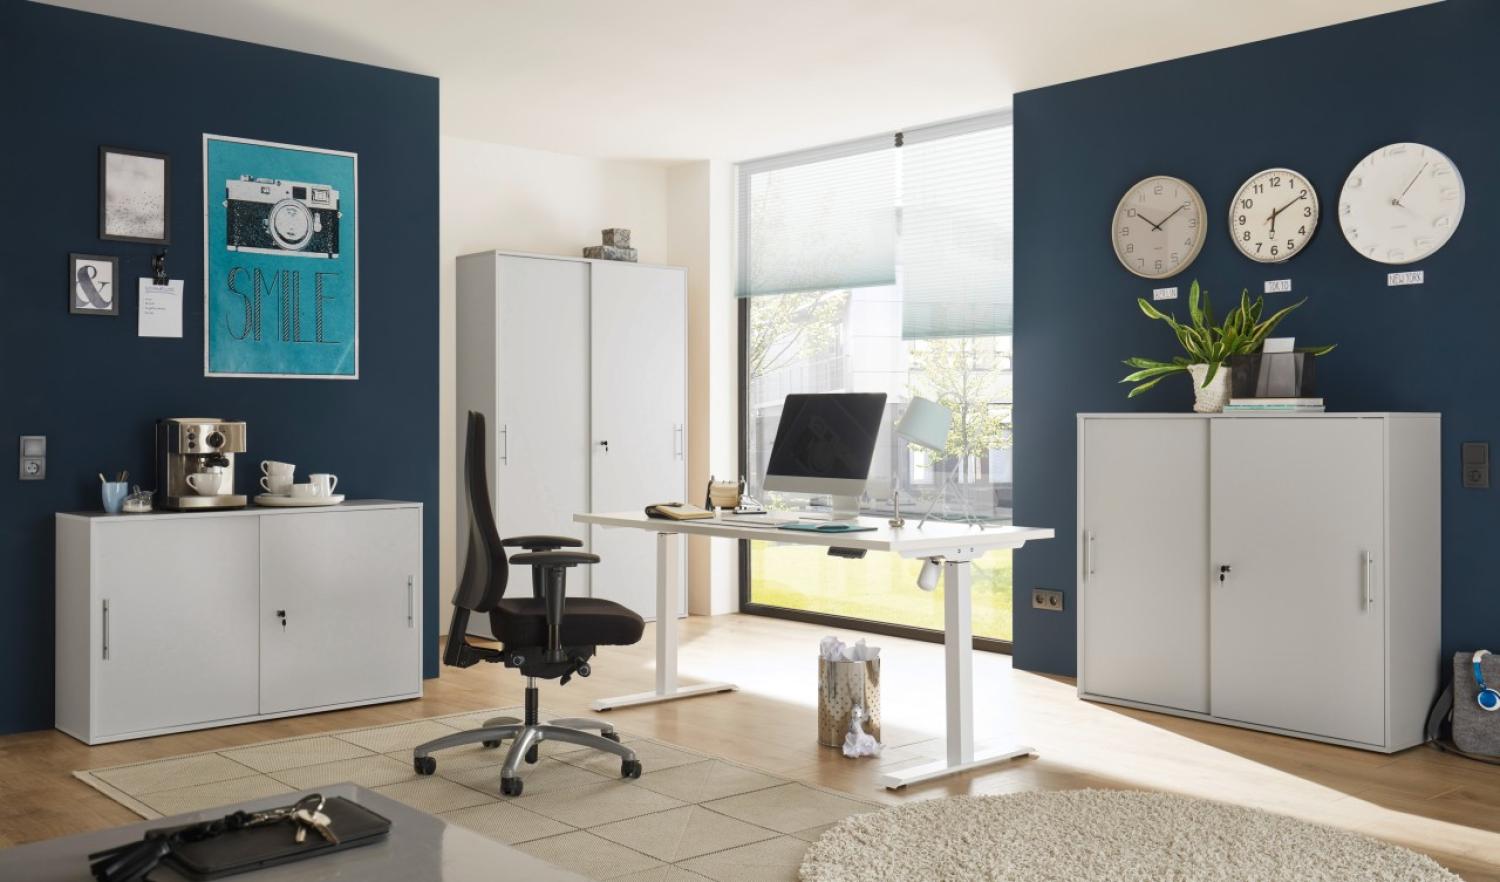 Büromöbel Shove Pronto komplett Set 4 teilig in Grau mit elektrisch höhenverstellbaren Schreibtisch und drei verschieden großen, abschließbaren Aktenschränken - MD111001 Bild 1